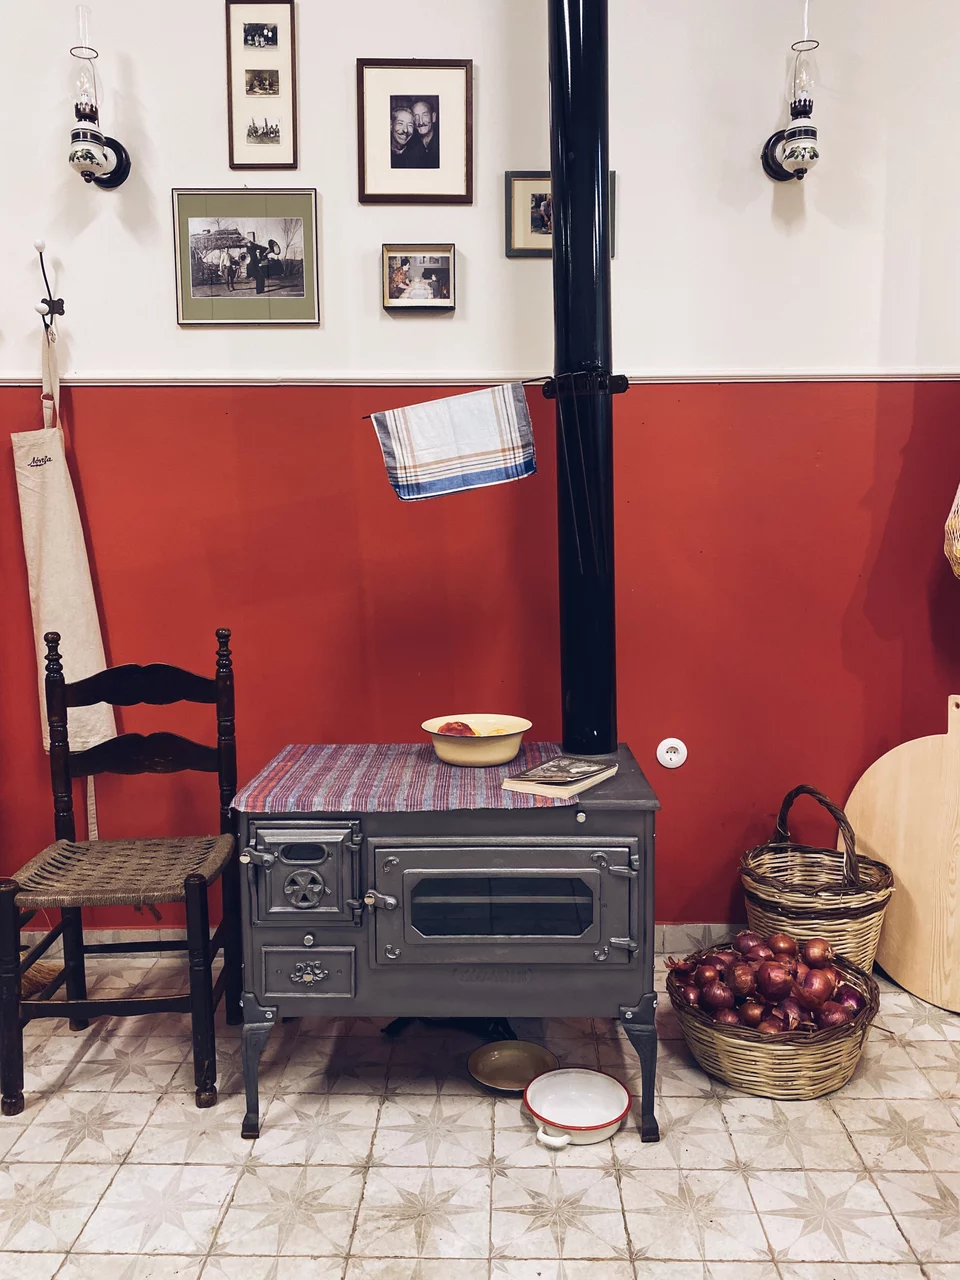 Μια ξυλόσομπα, καλάθια με κρεμμύδια, παλιές φωτογραφίες σε κάδρα, λάμπες πετρελαίου, συνθέτουν το σκηνικό μιας αυθεντικής παλιάς κουζίνας του χωριού / Φωτογραφία: Μάνος Λειβαδάρος/iefimerida